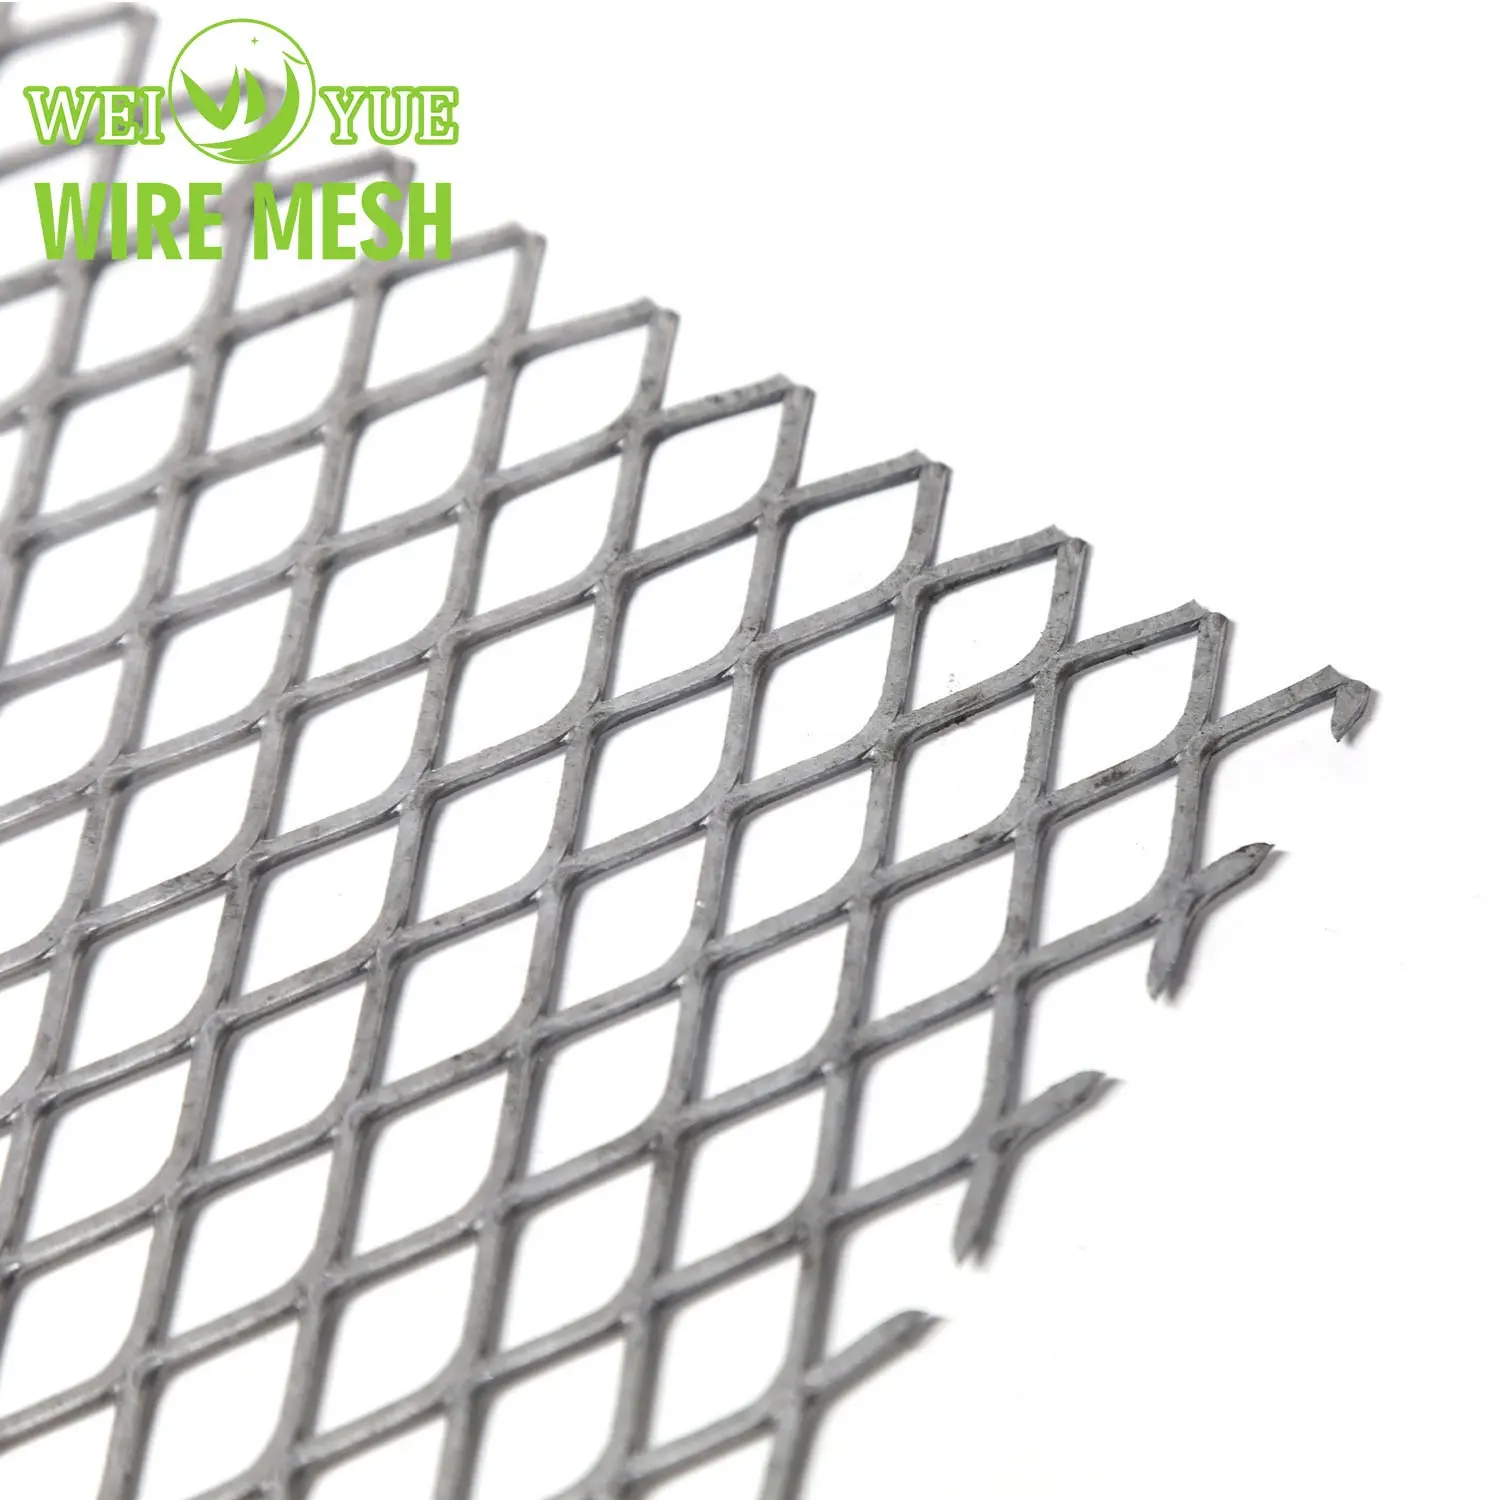 Rete metallica di alluminio decorativa del diamante o maglia metallica espansa perforata inossidabile esagonale